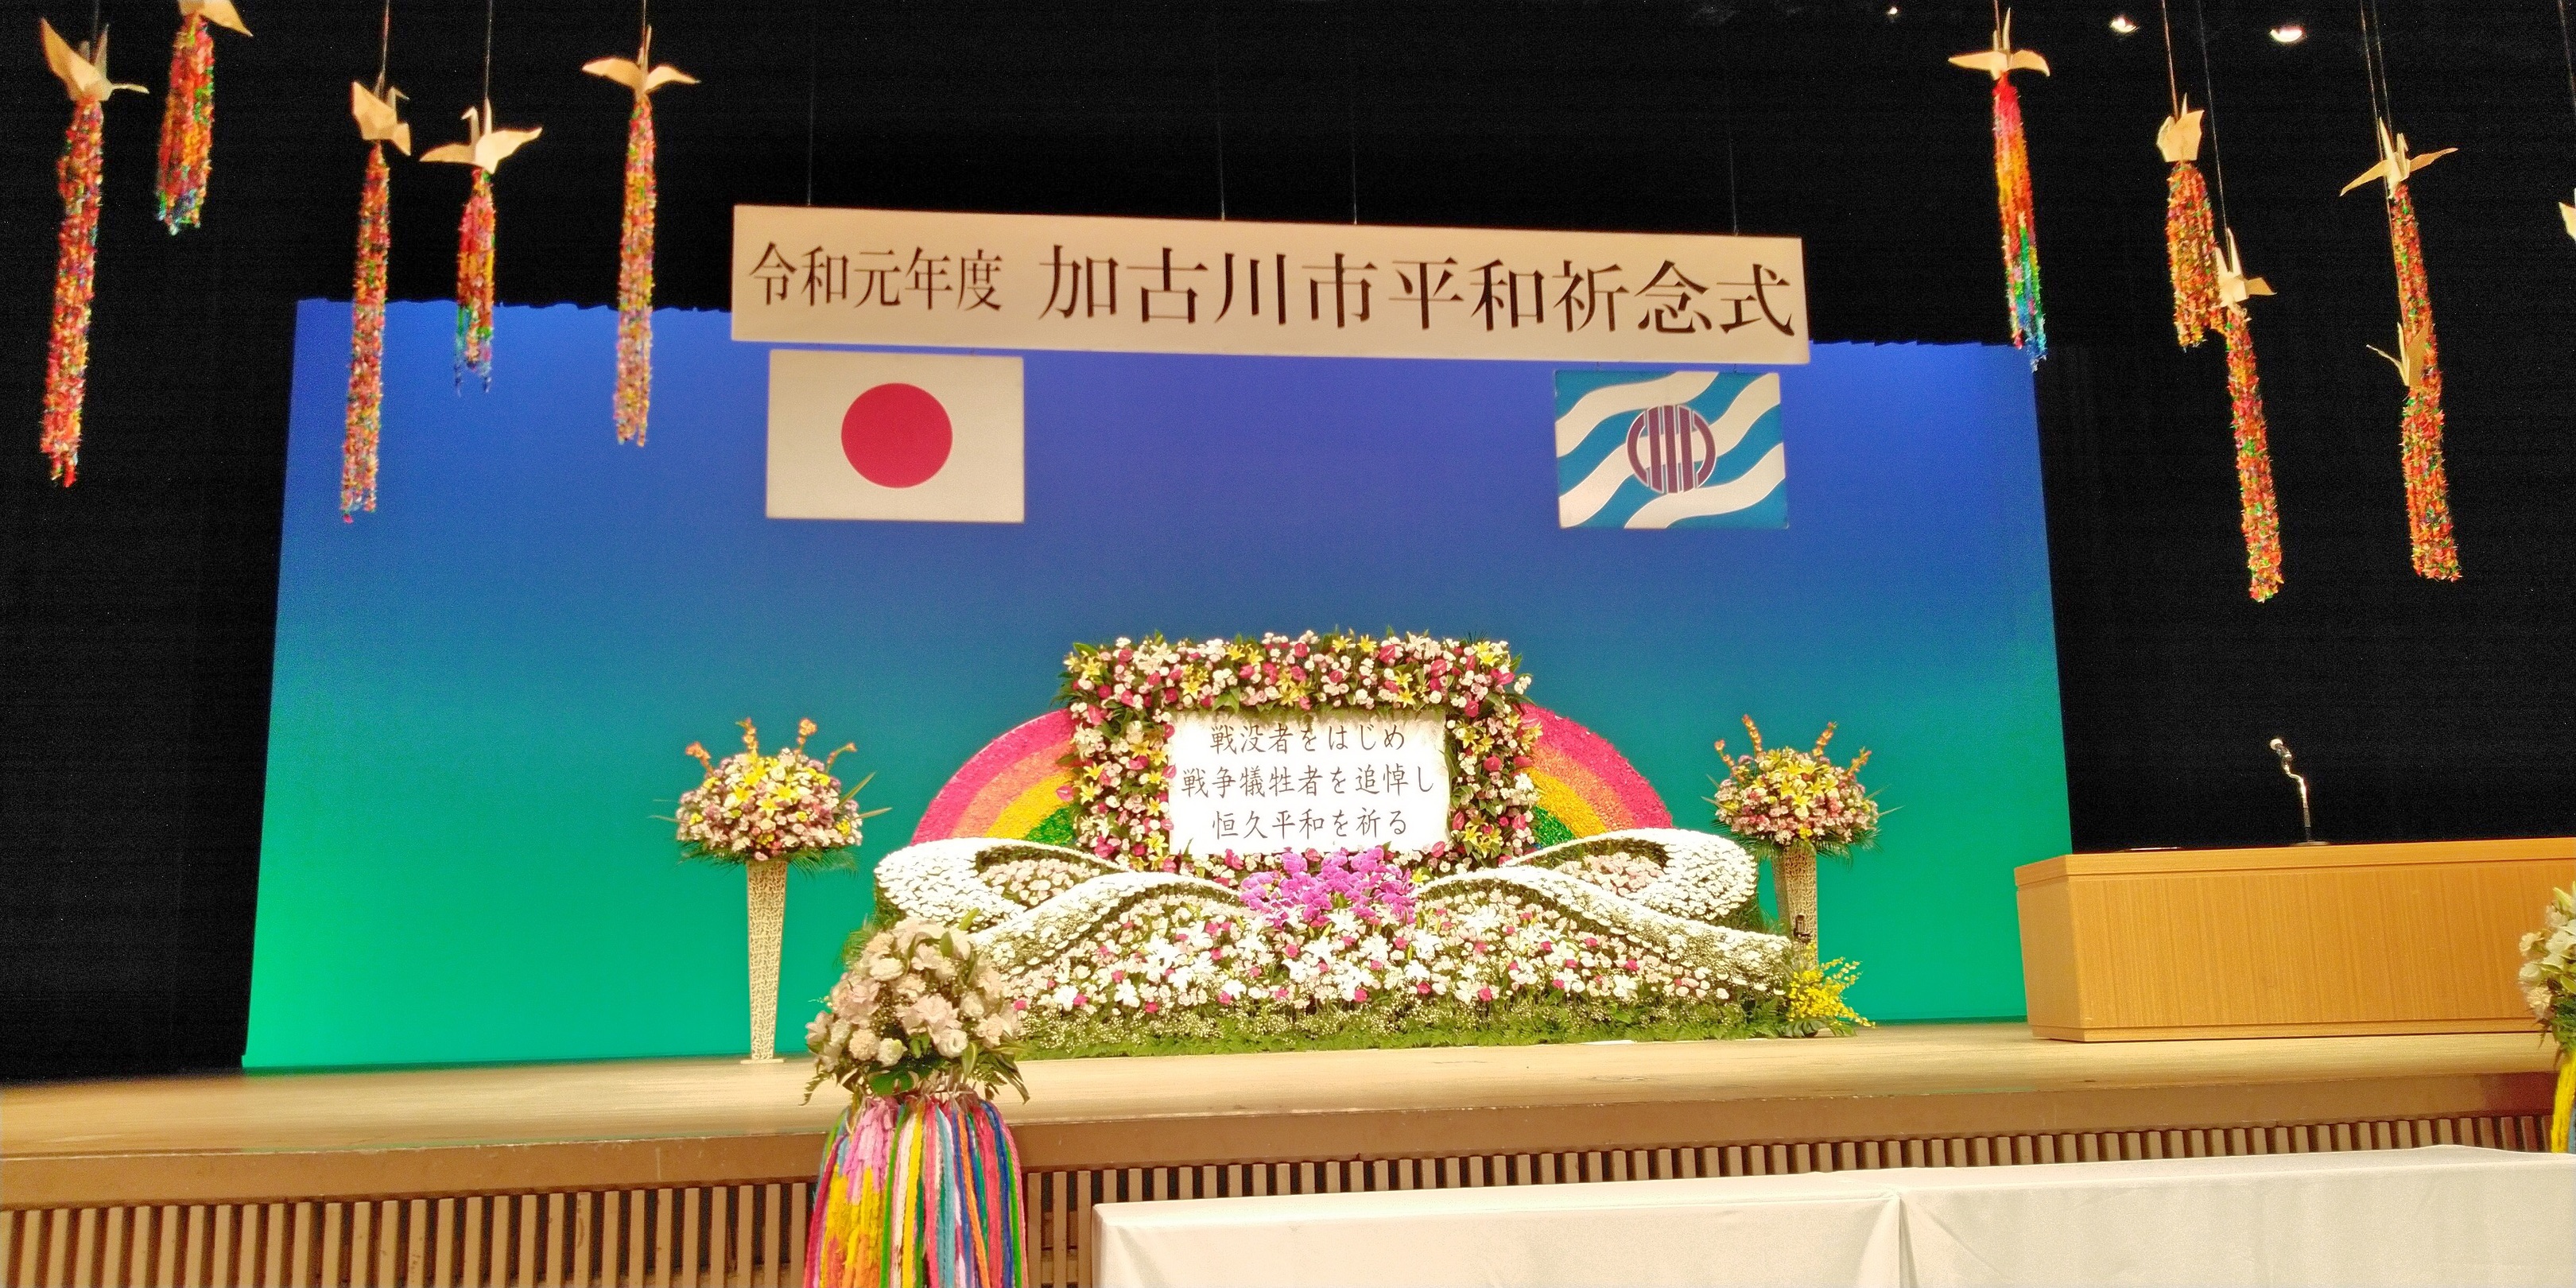 2019年10月5日(土) 加古川市平和祈念式典に出席